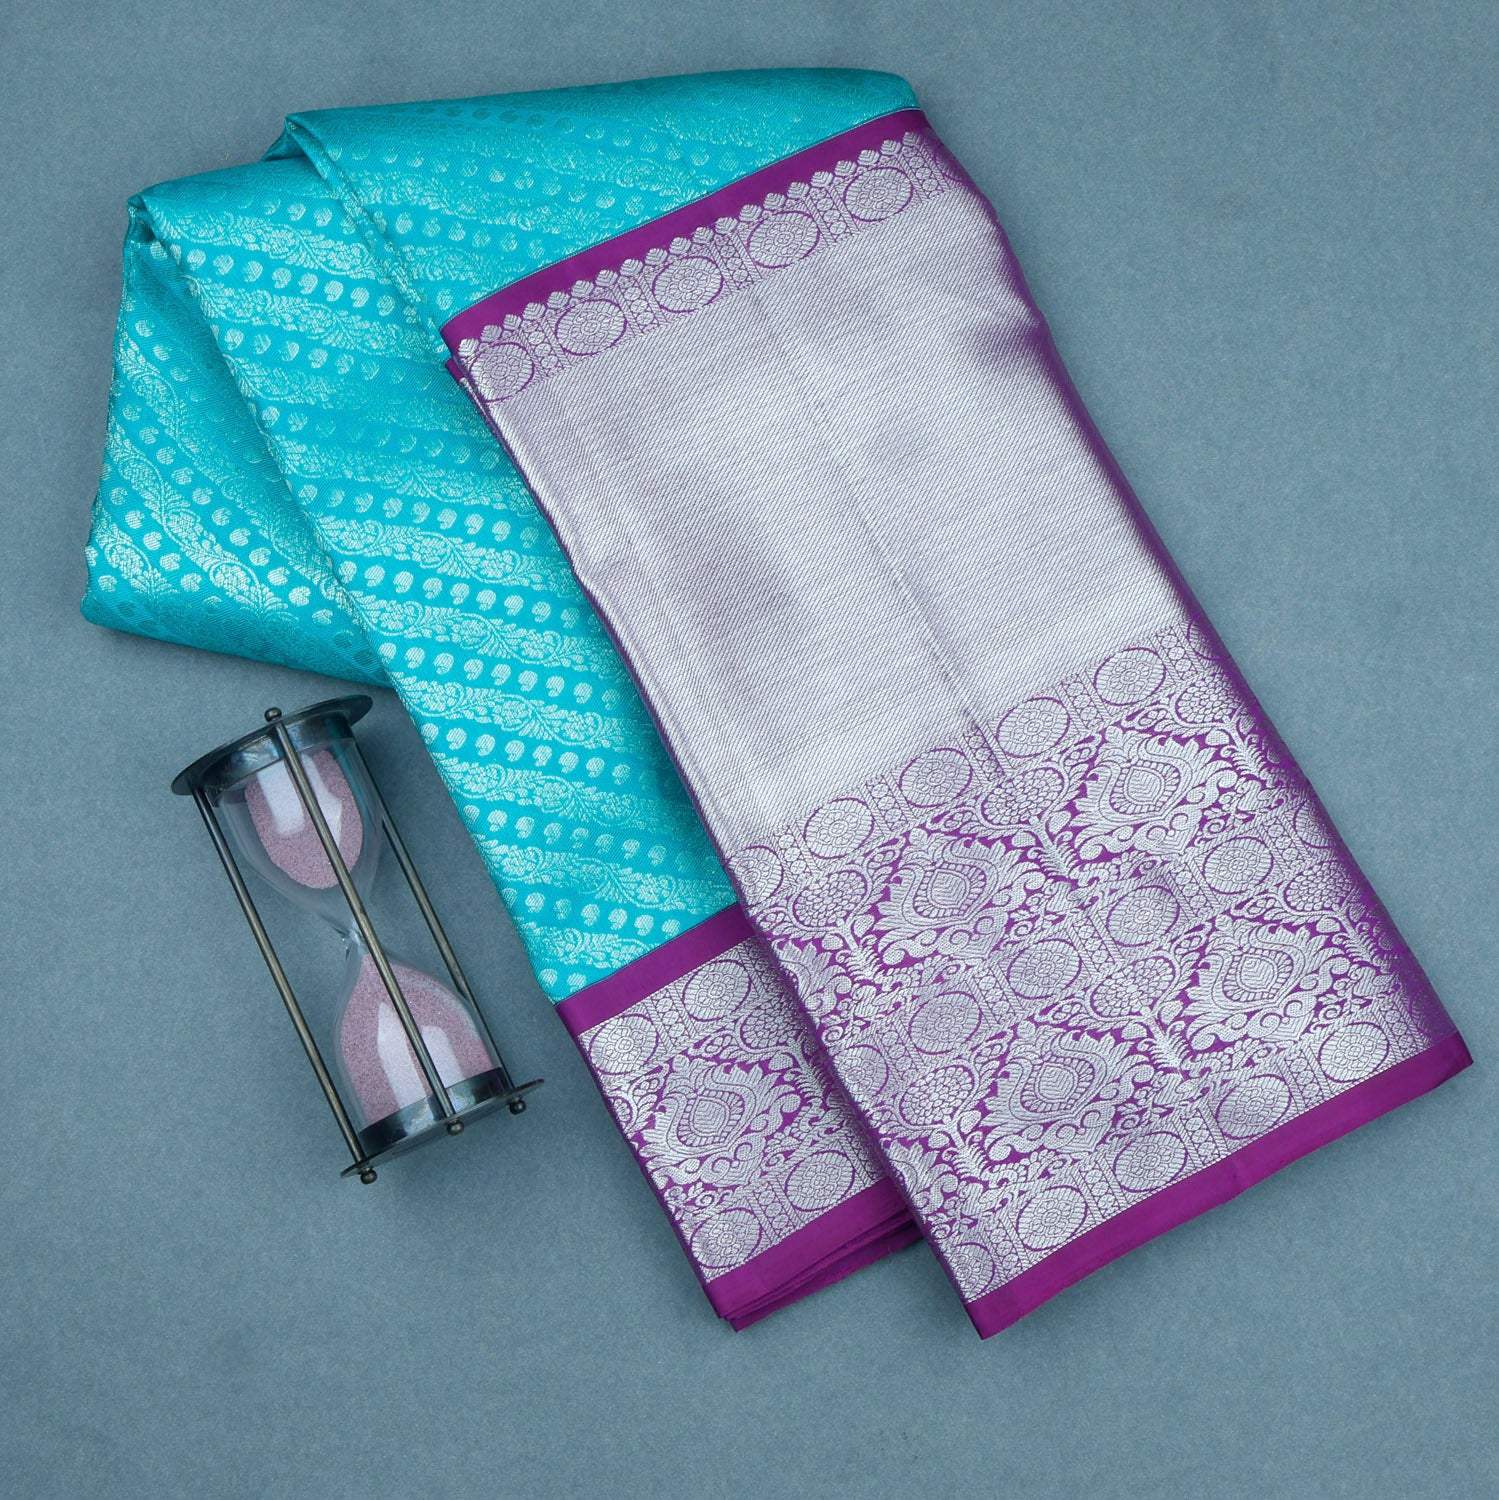 Bright Blue Kanjivaram Silk Saree With Floral Pattern - Singhania's